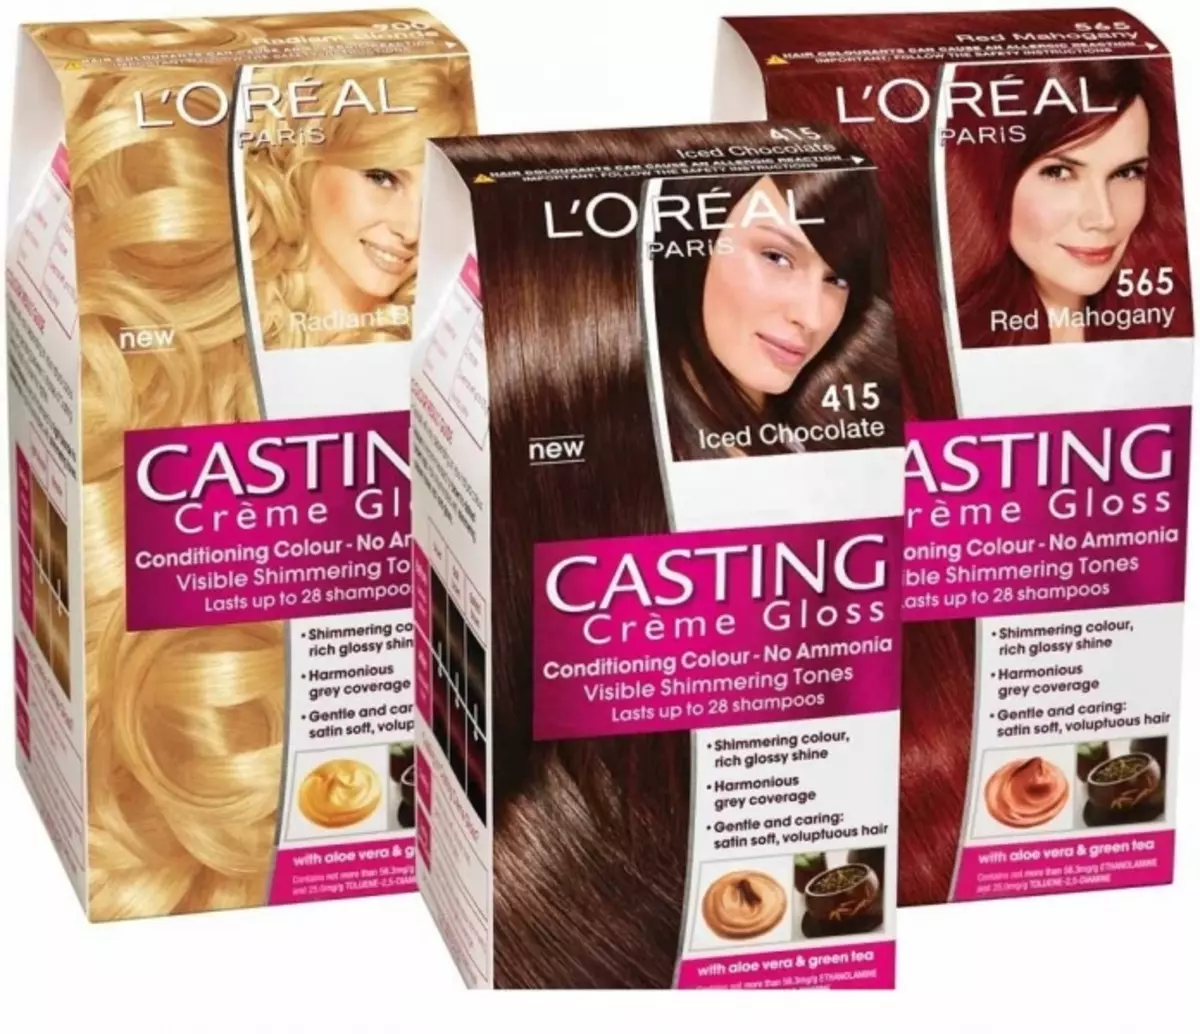 Краска для волос l'Oreal casting Creme Gloss 254мл